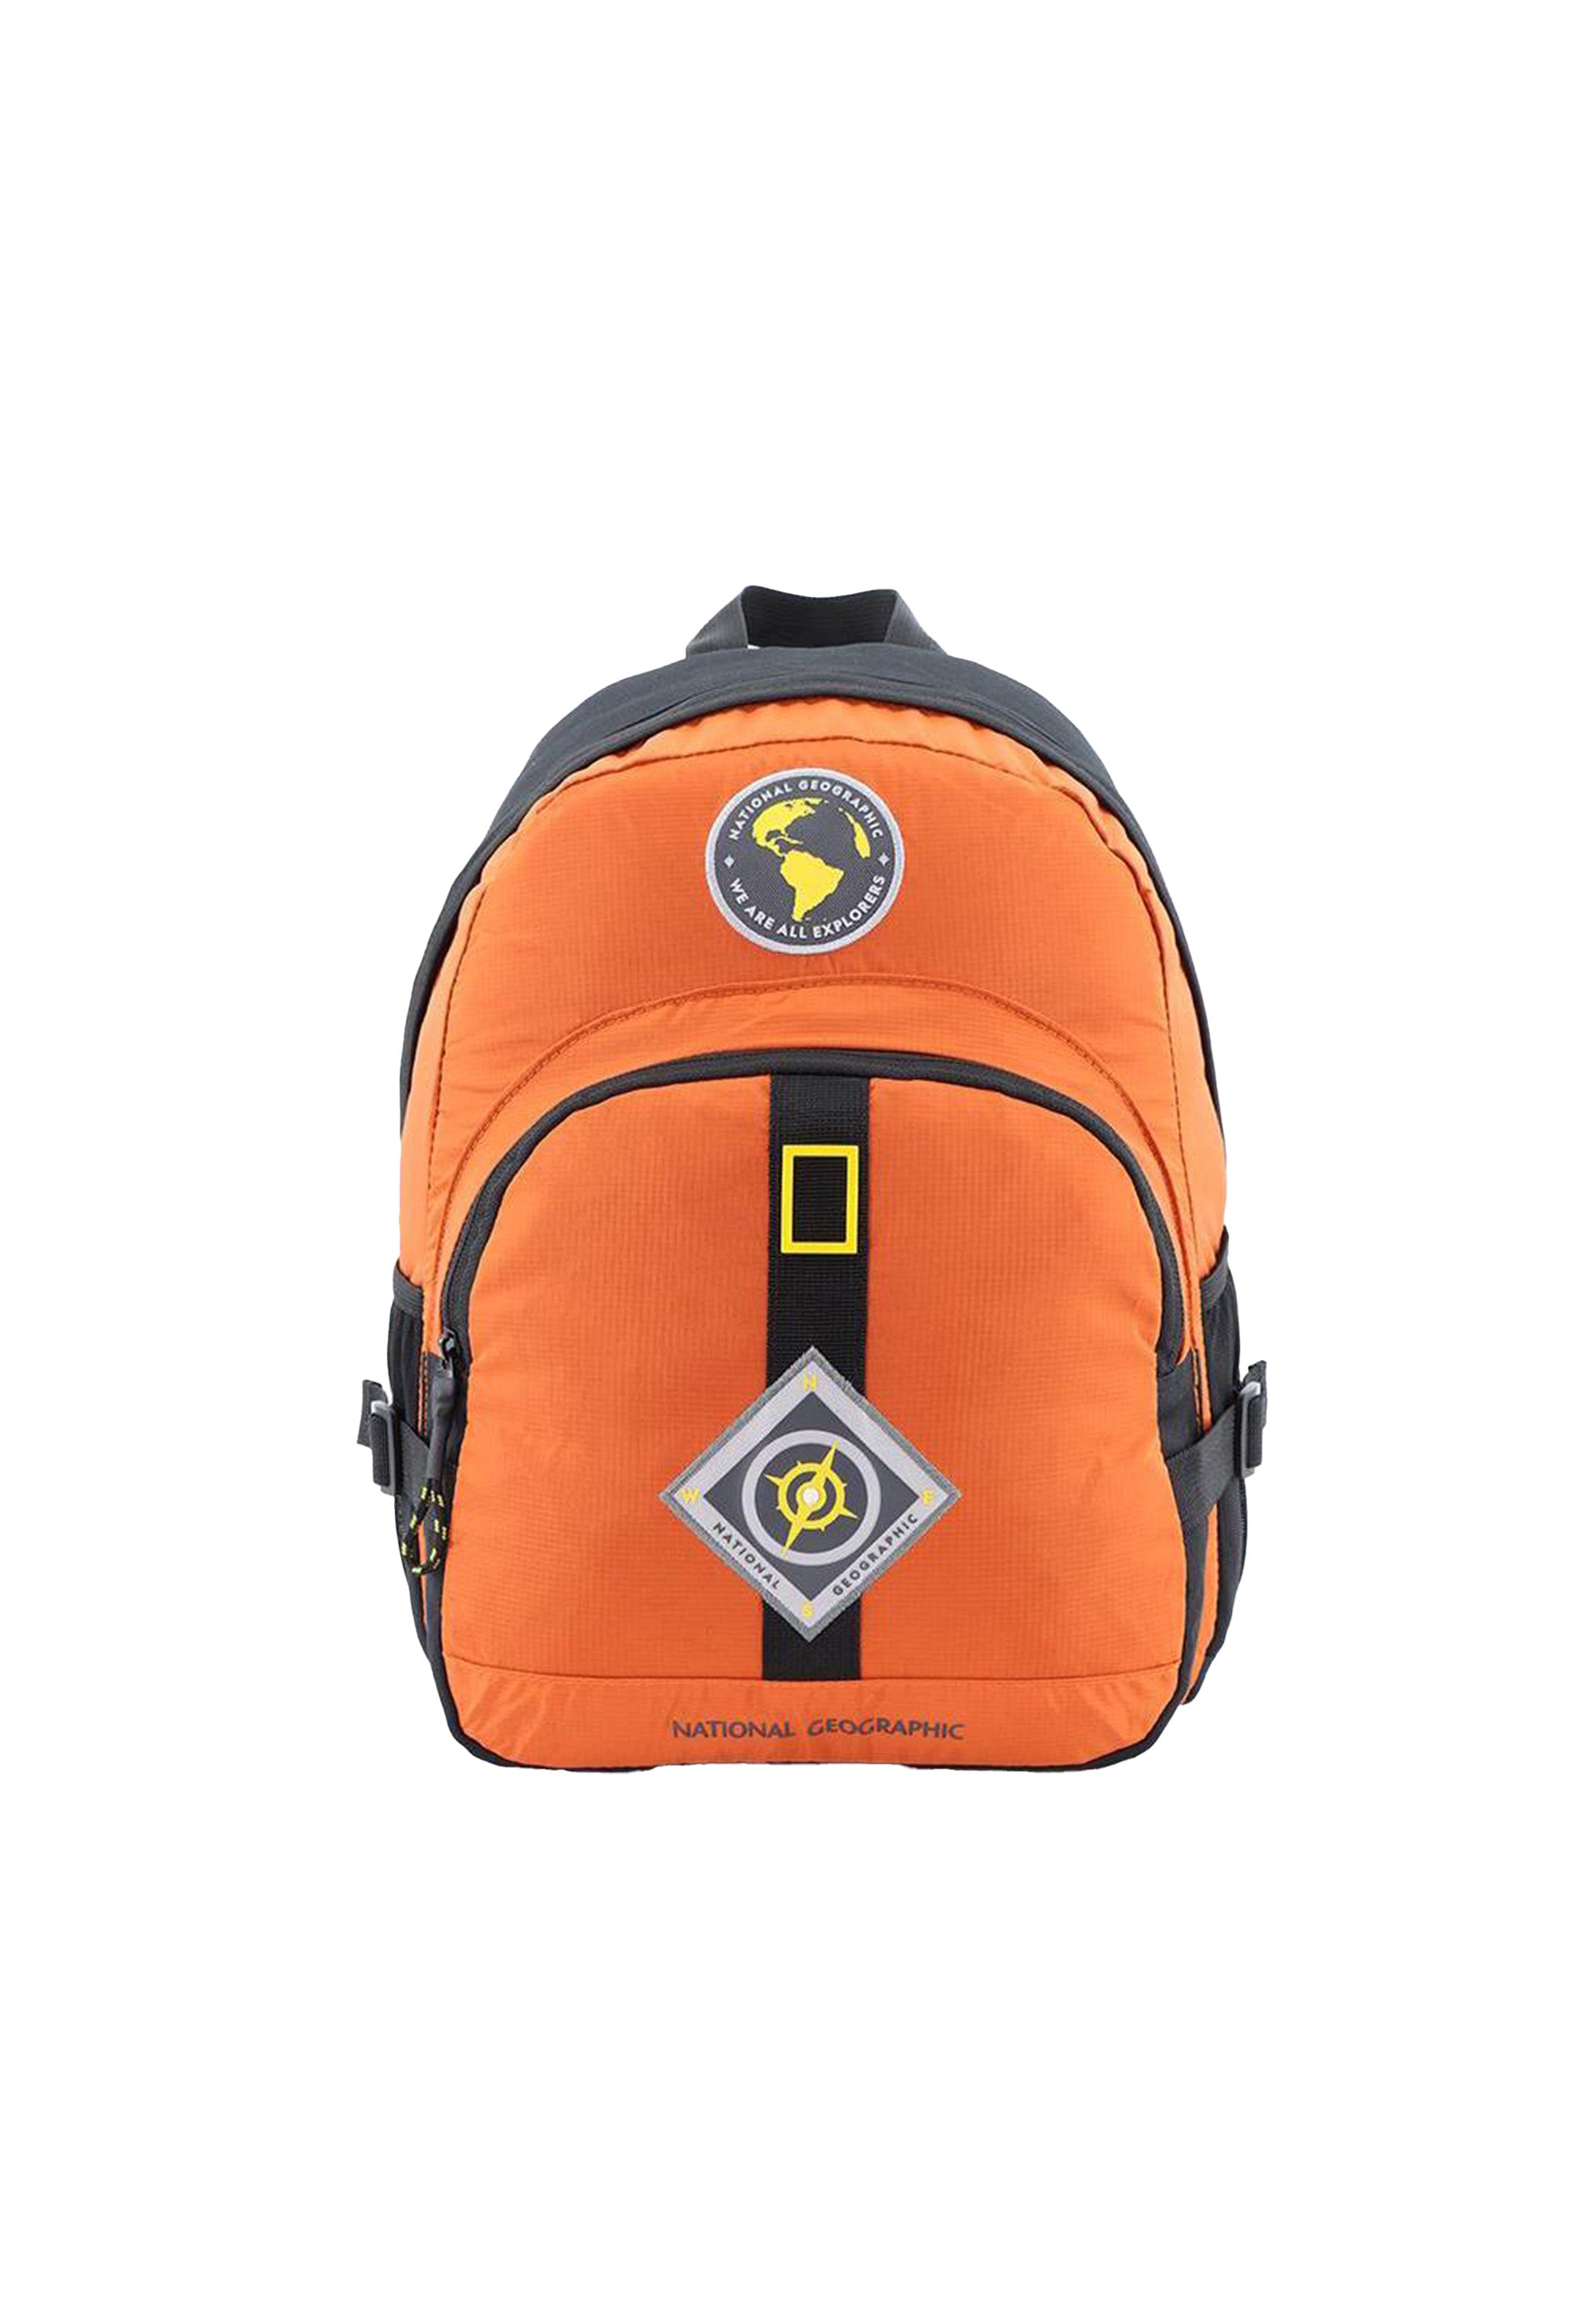 National Geographic - New Explorer | Freizeit Wanderrucksack | Orange